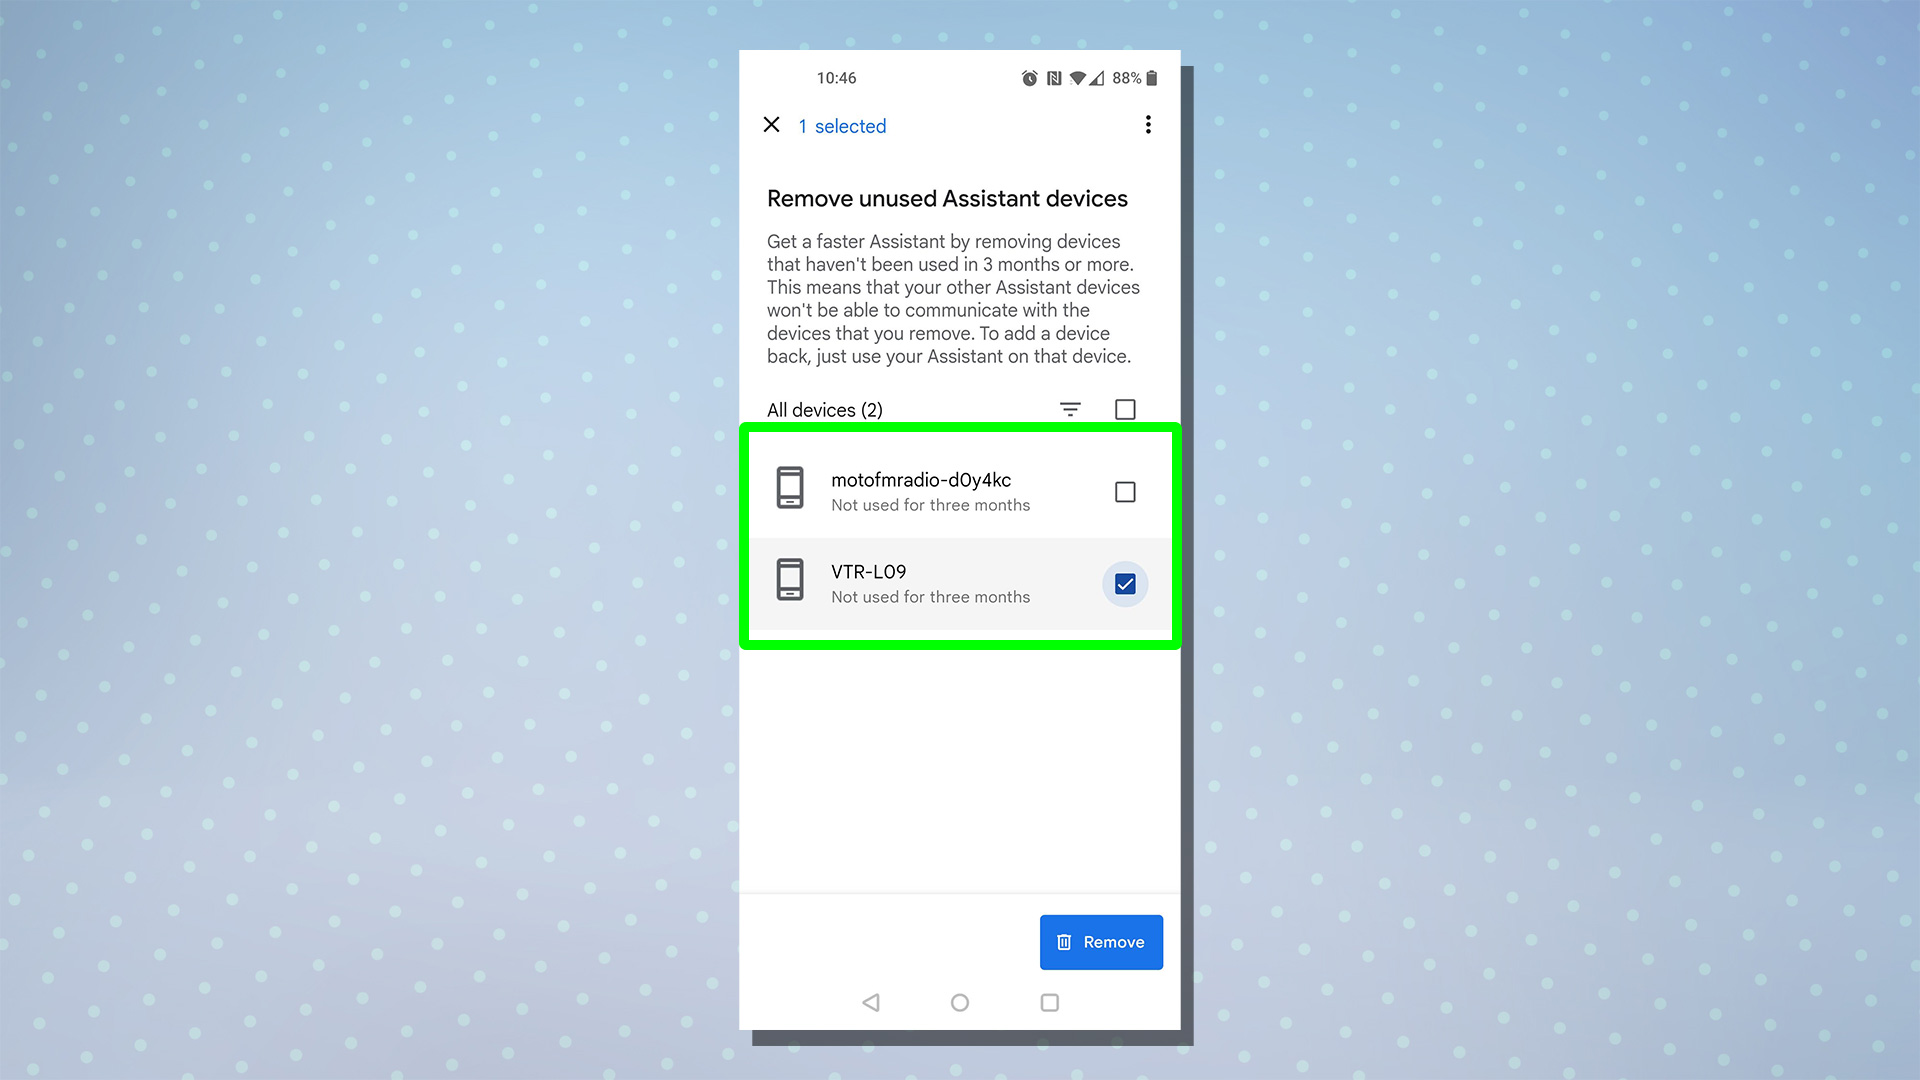 Снимок экрана, показывающий настройки Google Assistant для удаления неиспользуемых устройств с выделенными определенными устройствами.